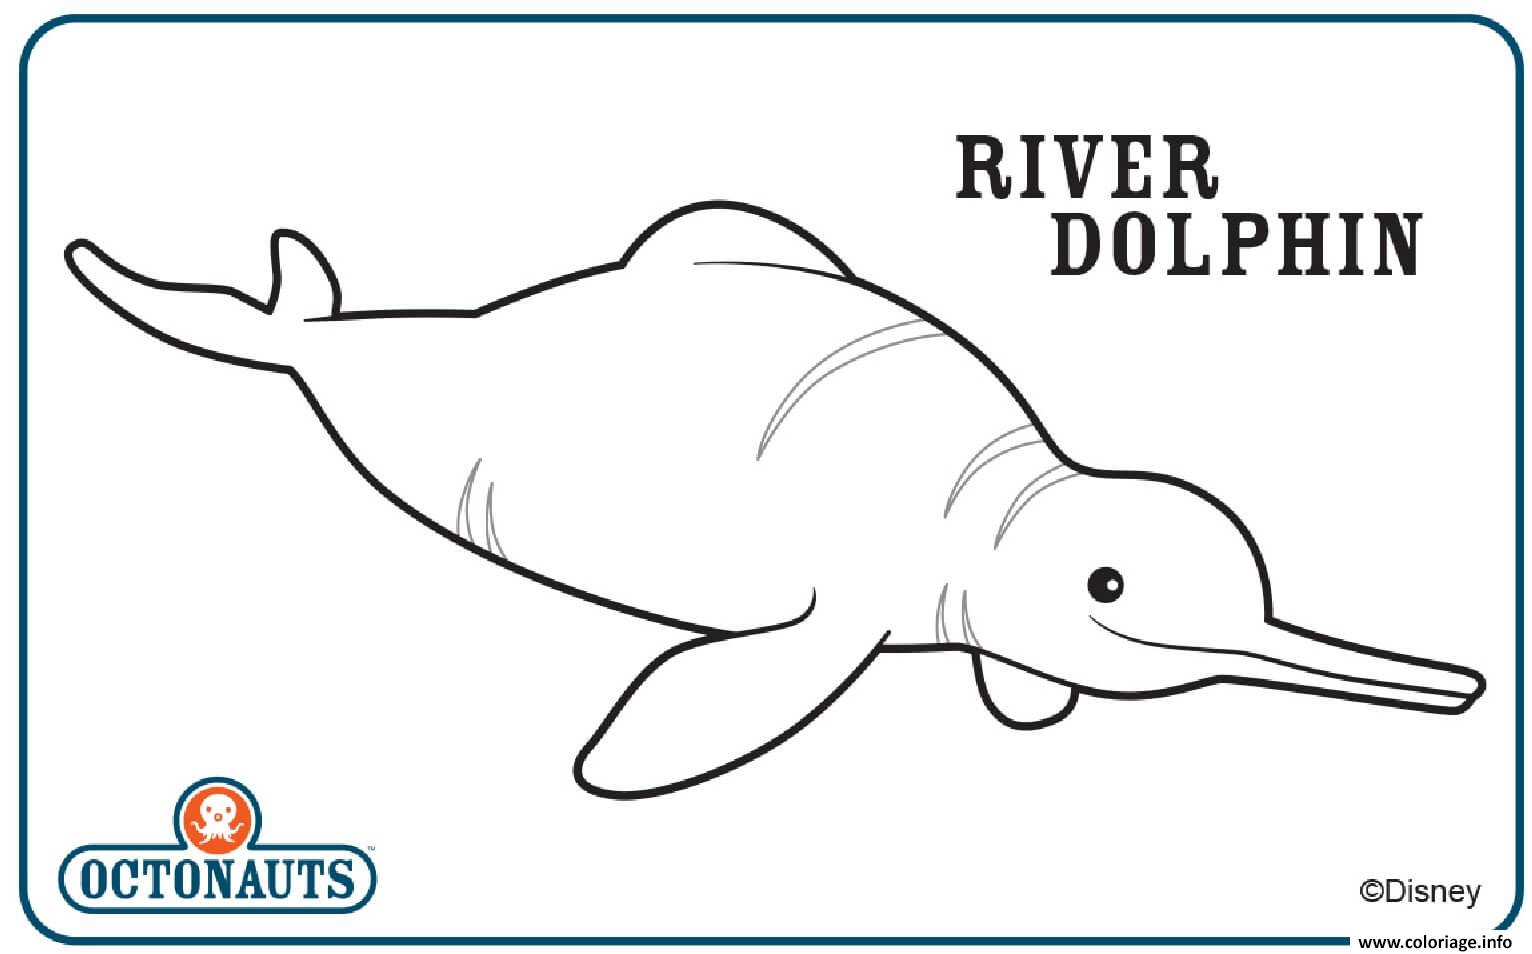 Dessin river dolphin octonaute creature Coloriage Gratuit à Imprimer